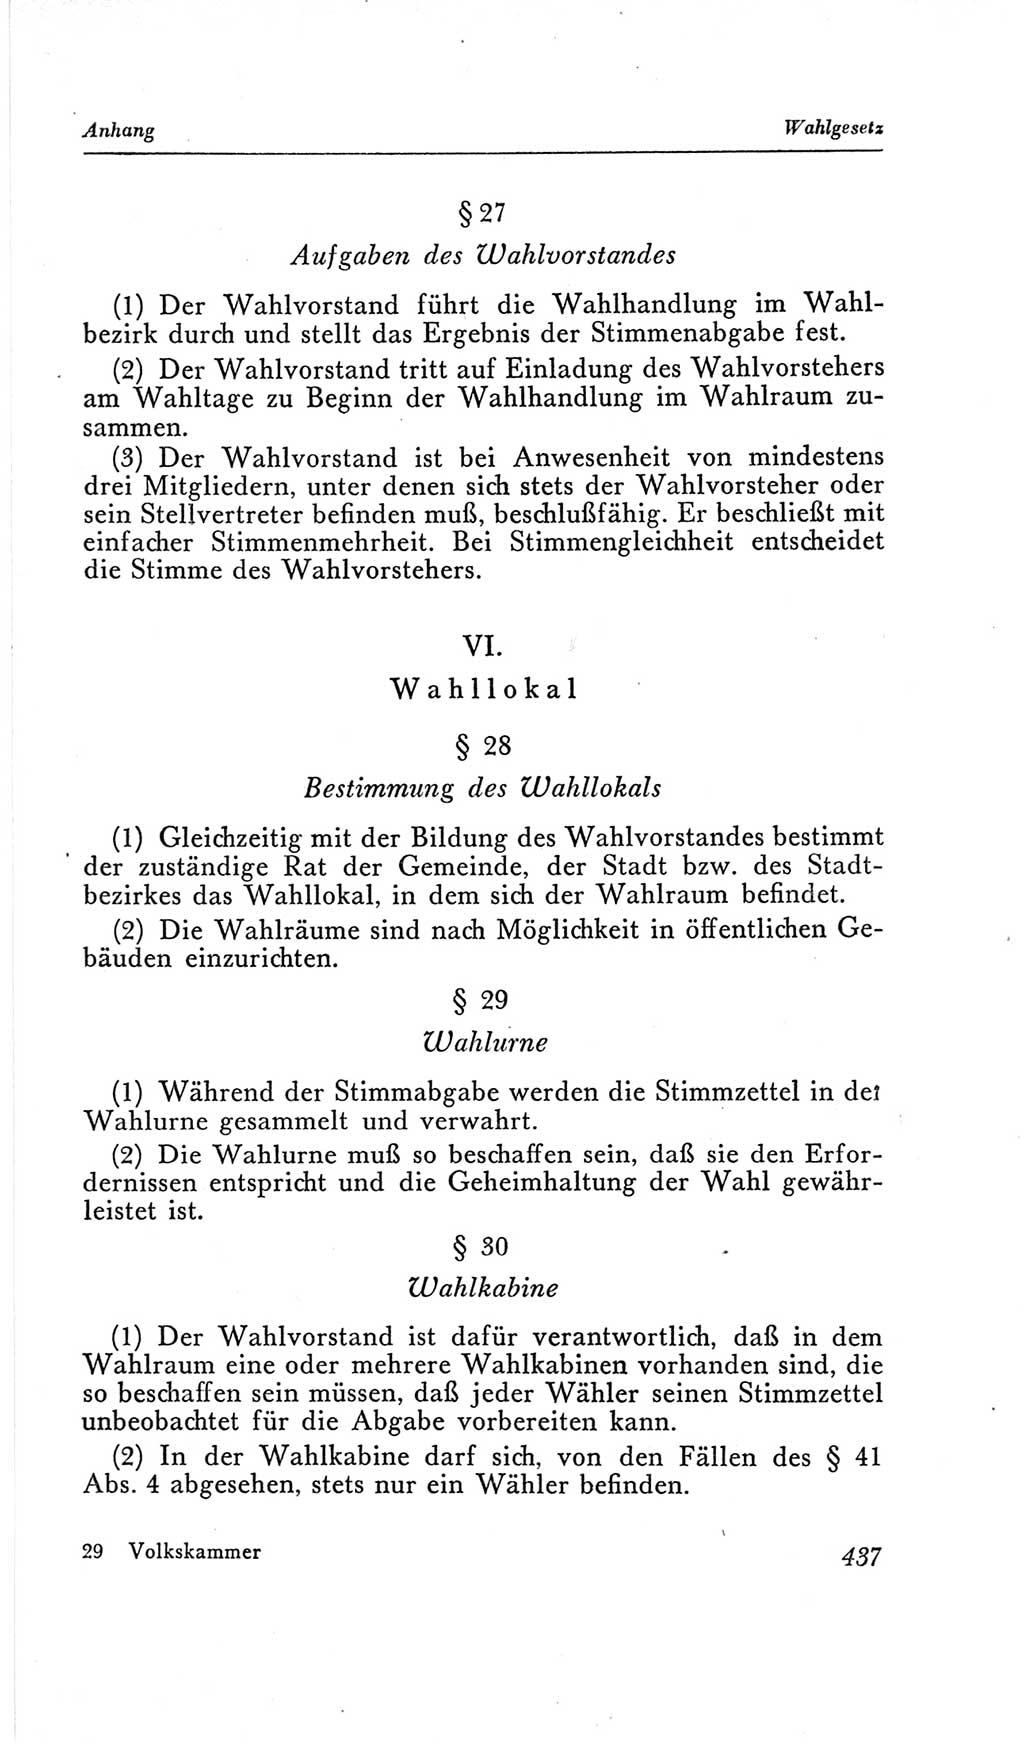 Handbuch der Volkskammer (VK) der Deutschen Demokratischen Republik (DDR), 2. Wahlperiode 1954-1958, Seite 437 (Hdb. VK. DDR, 2. WP. 1954-1958, S. 437)